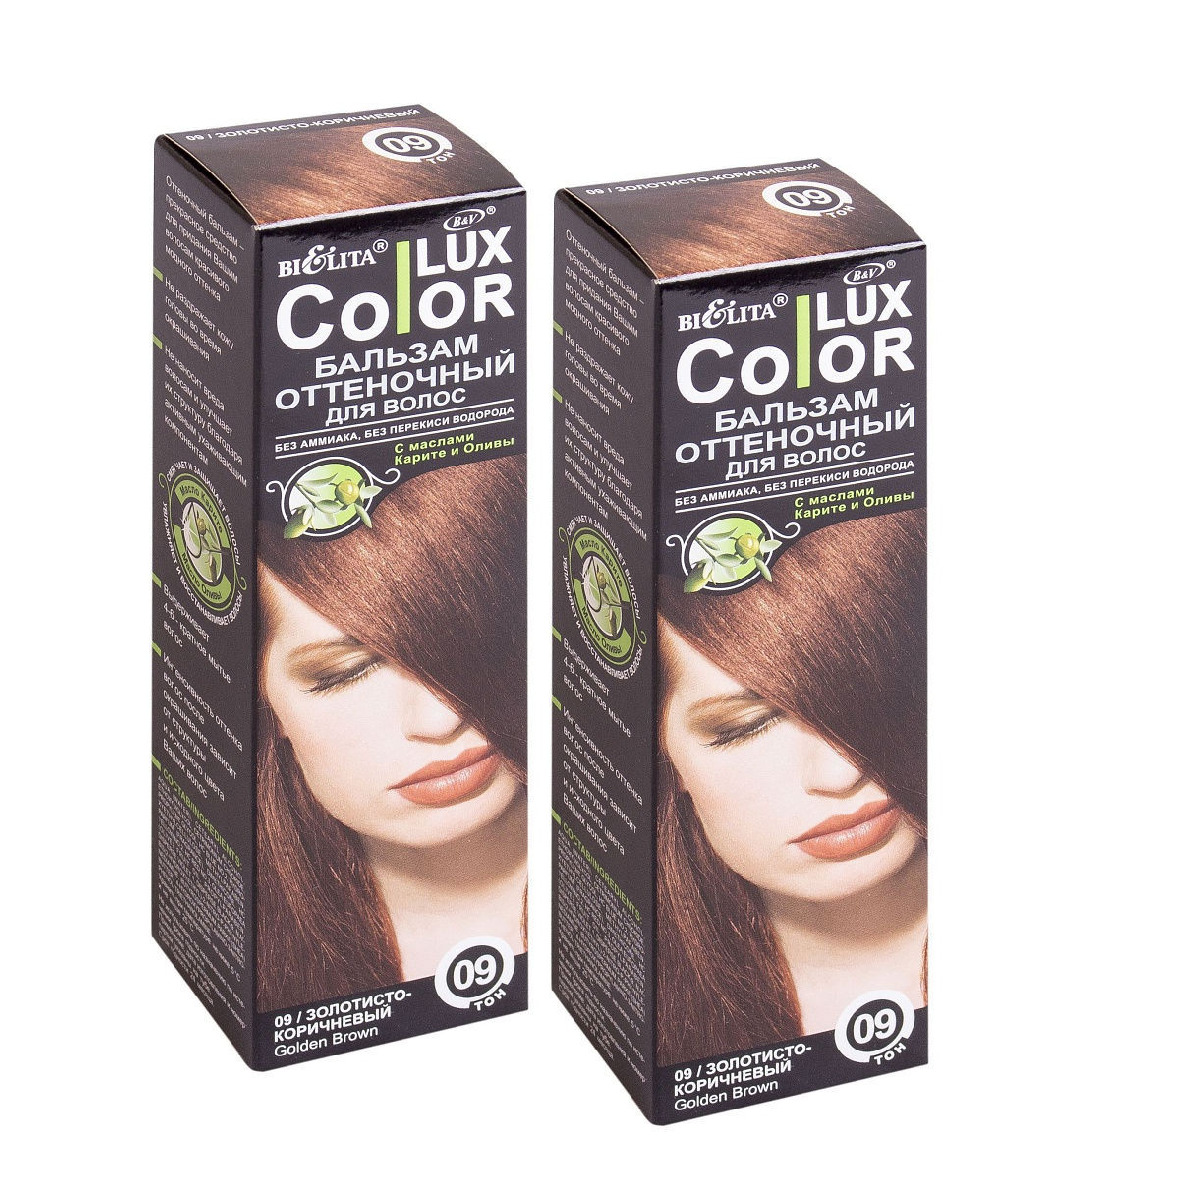 Оттеночный белита отзывы. Оттеночный бальзам для волос "Color Lux" тон: 09 золотисто-коричневый 100 мл. Bielita Color Lux бальзам оттеночный русый. Bielita Color Lux бальзам 24. Бальзам Bielita Color Lux, тон 09 золотисто-коричневый.